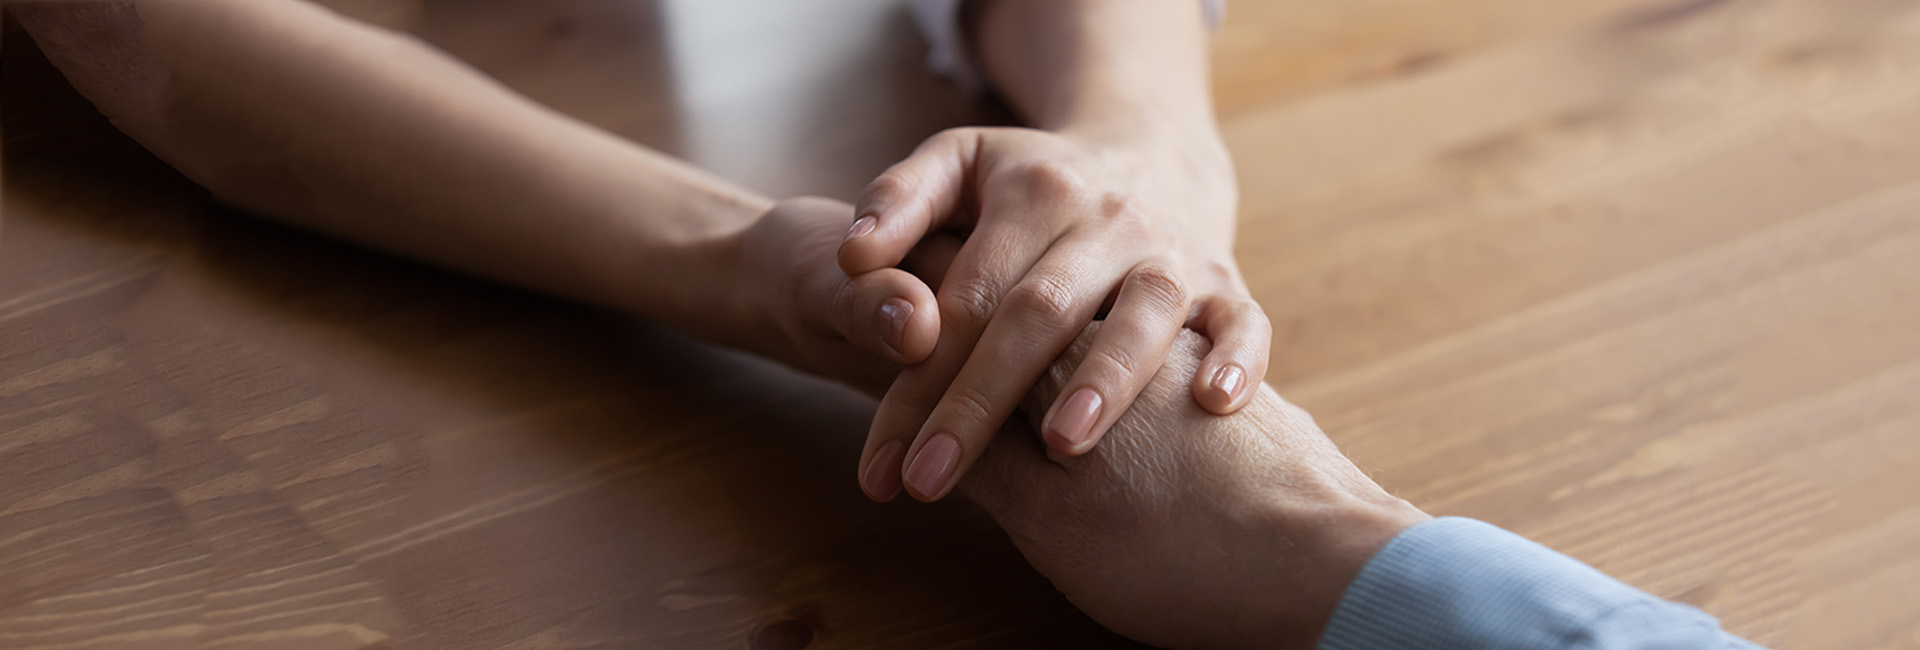 Pension für Witwen bzw. Witwer und hinterbliebene eingetragene Partnerinnen bzw. Partner: Zwei Hände halten sich tröstend